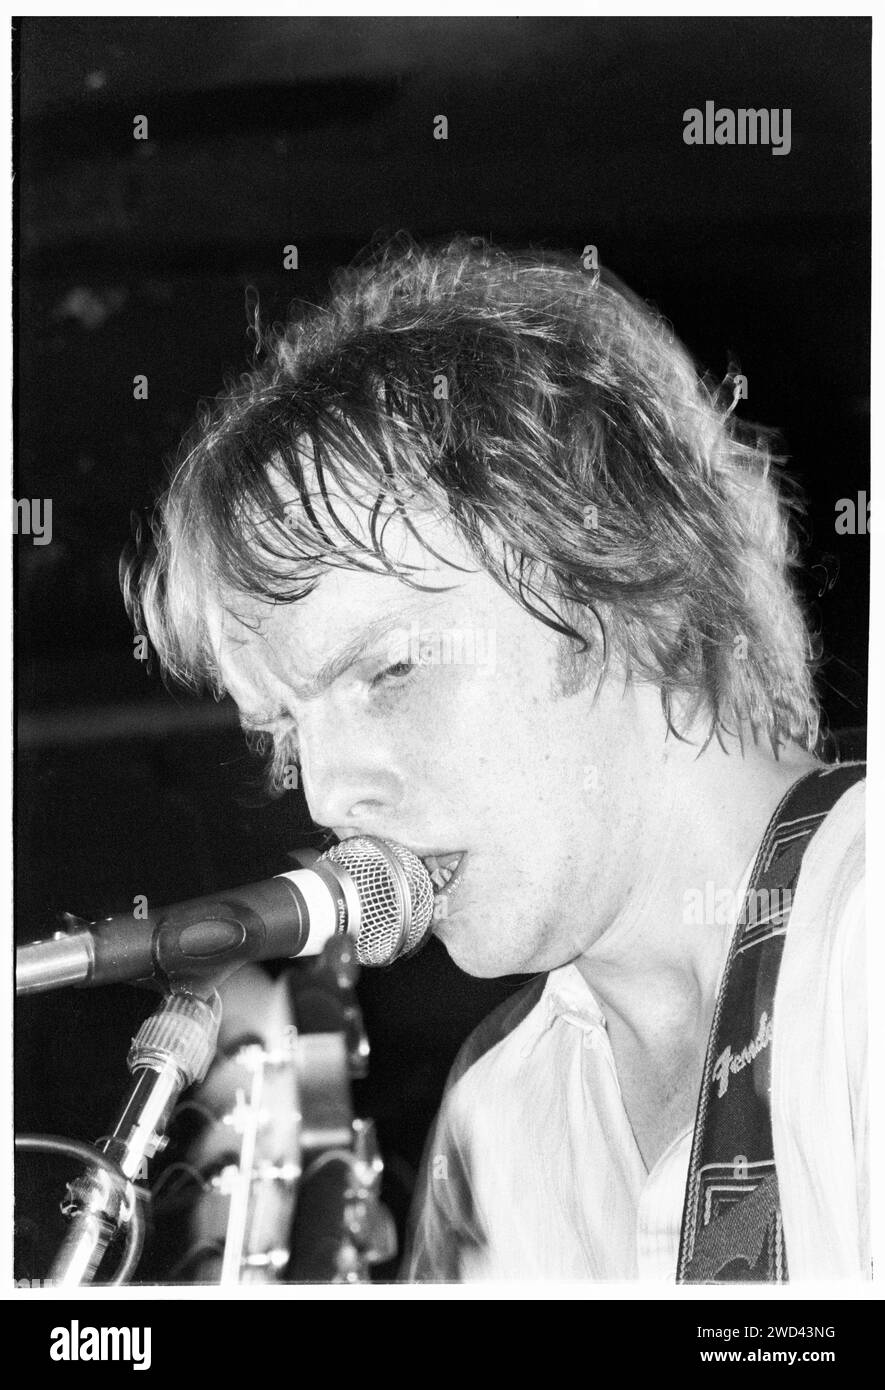 Luke Haines des Auters joue en live au Bristol Bierkeller le 23 mai 1994. Photo : Rob Watkins. INFO : The auteurs, un groupe de rock alternatif britannique dirigé par Luke Haines, a émergé dans les années 90 avec leur son sophistiqué et lettré. Des albums comme 'New Wave' et 'After Murder Park' ont présenté les chansons pointues de Haines, contribuant aux scènes indie et Britpop de l'époque. Banque D'Images